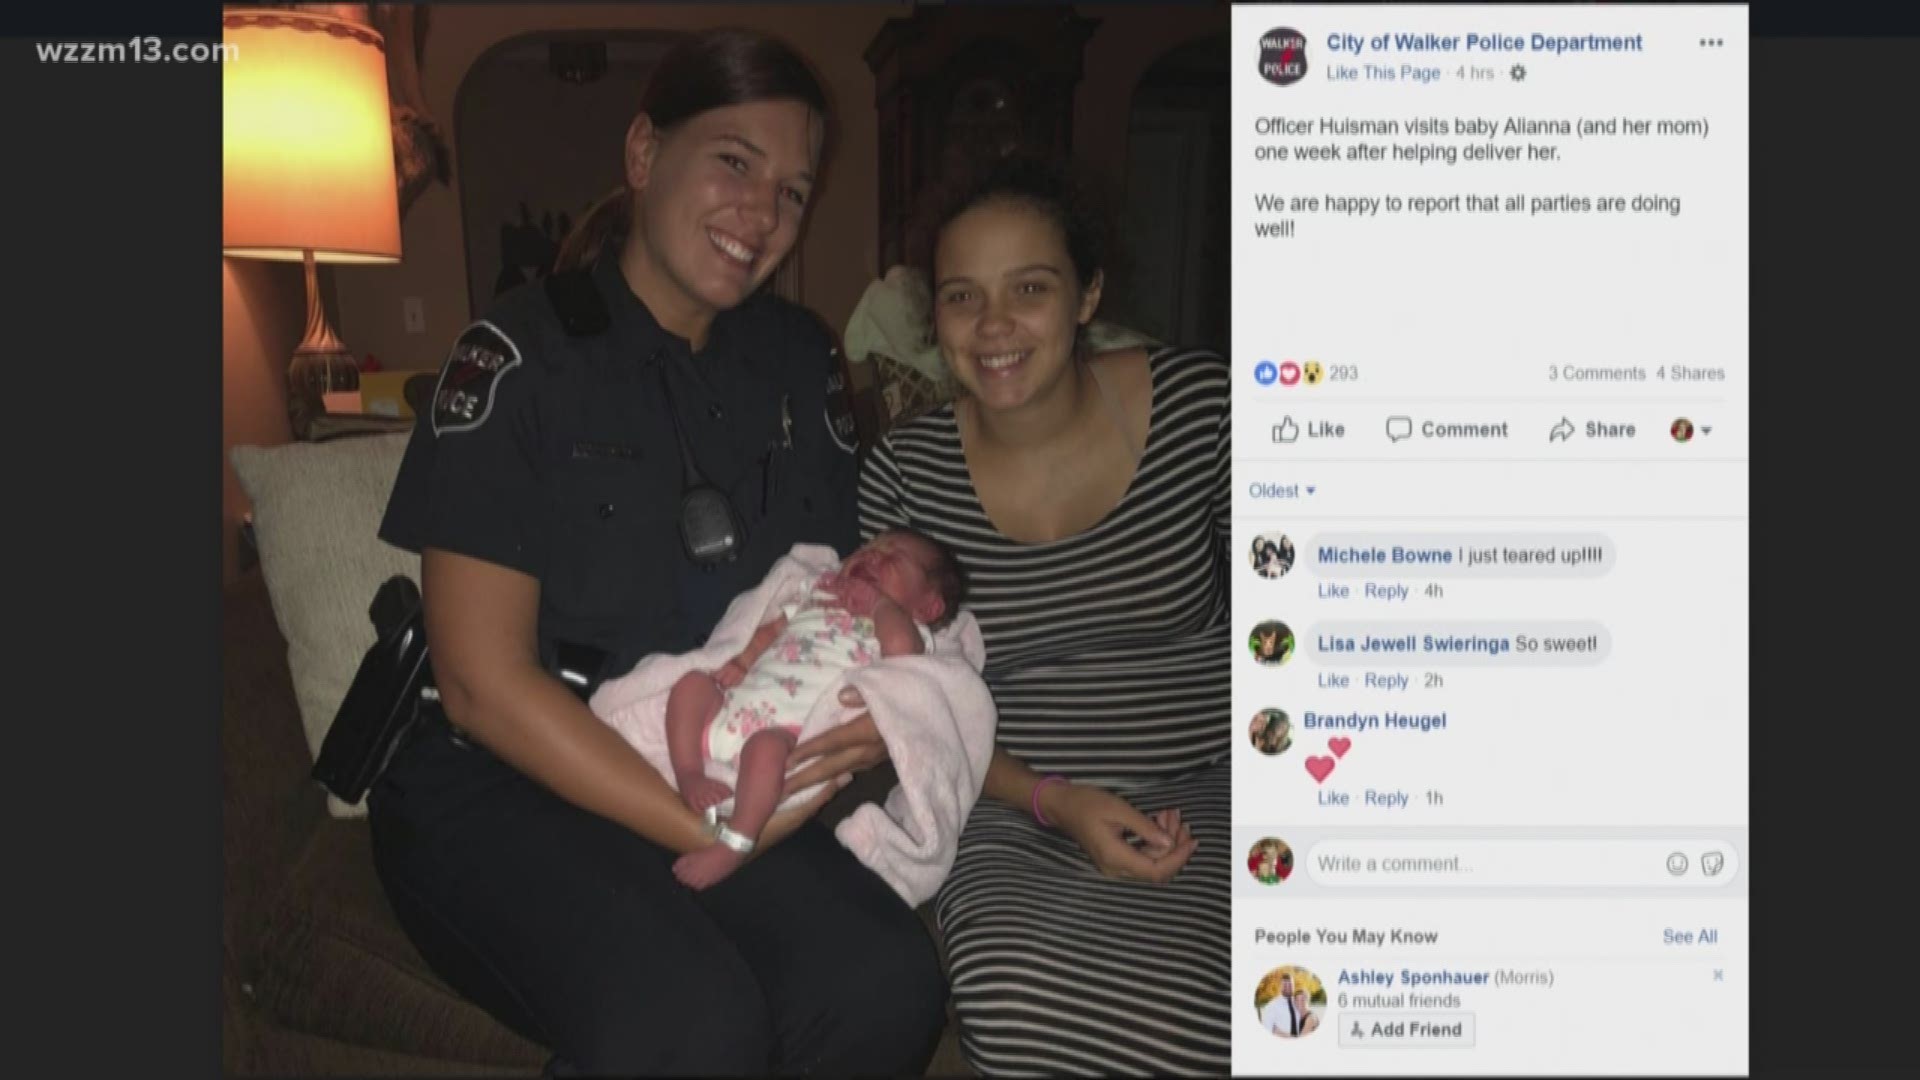 Walker Police officers help deliver baby